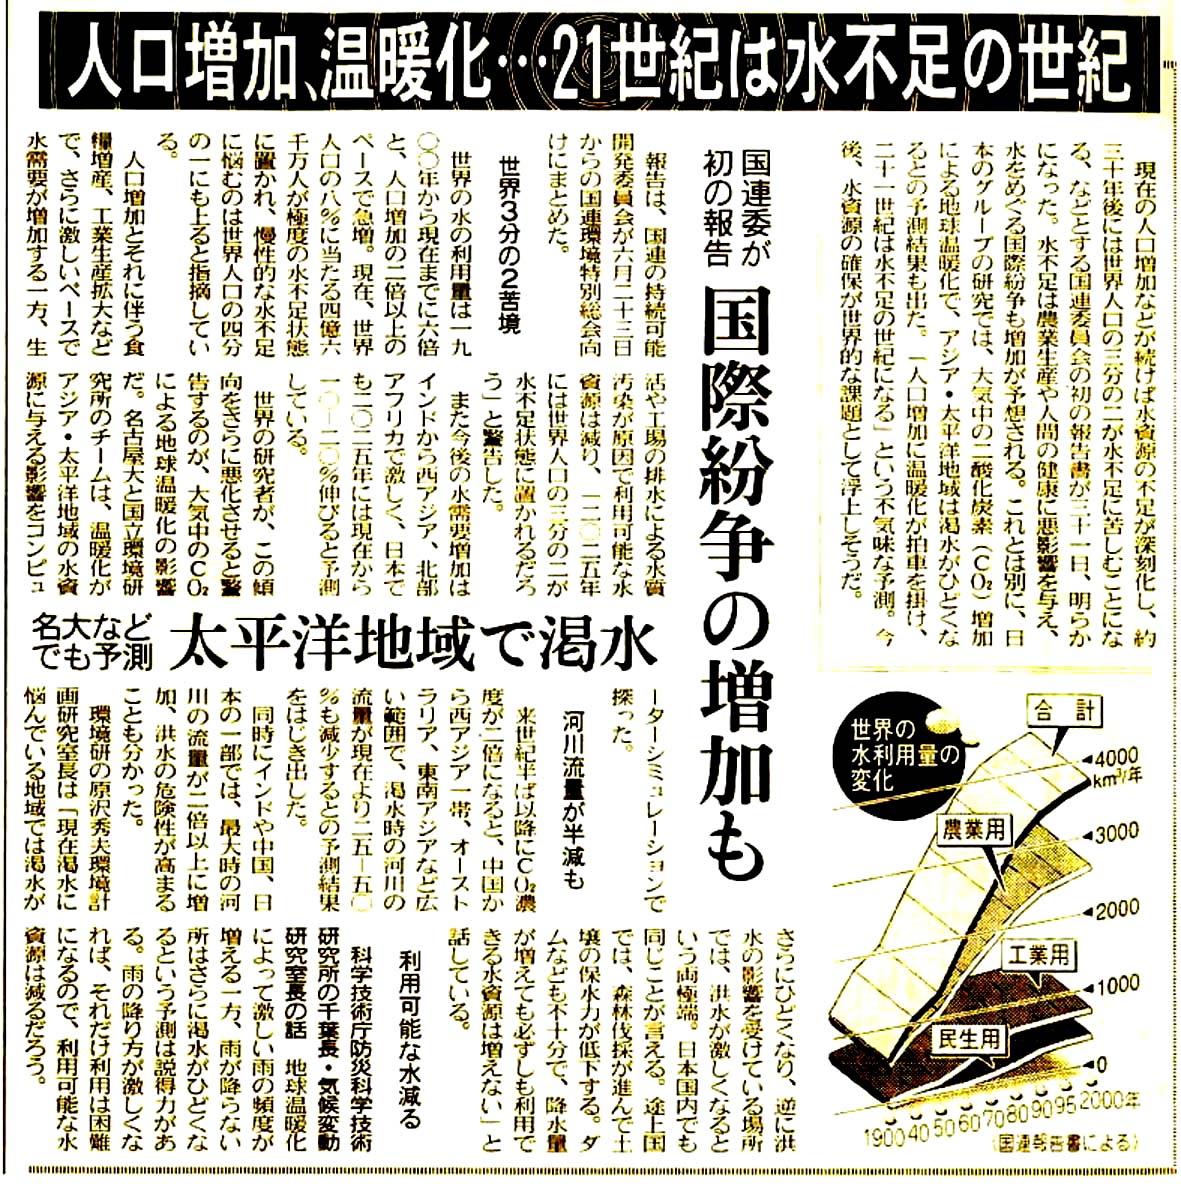 新聞記事 のコピーhp1.jpg